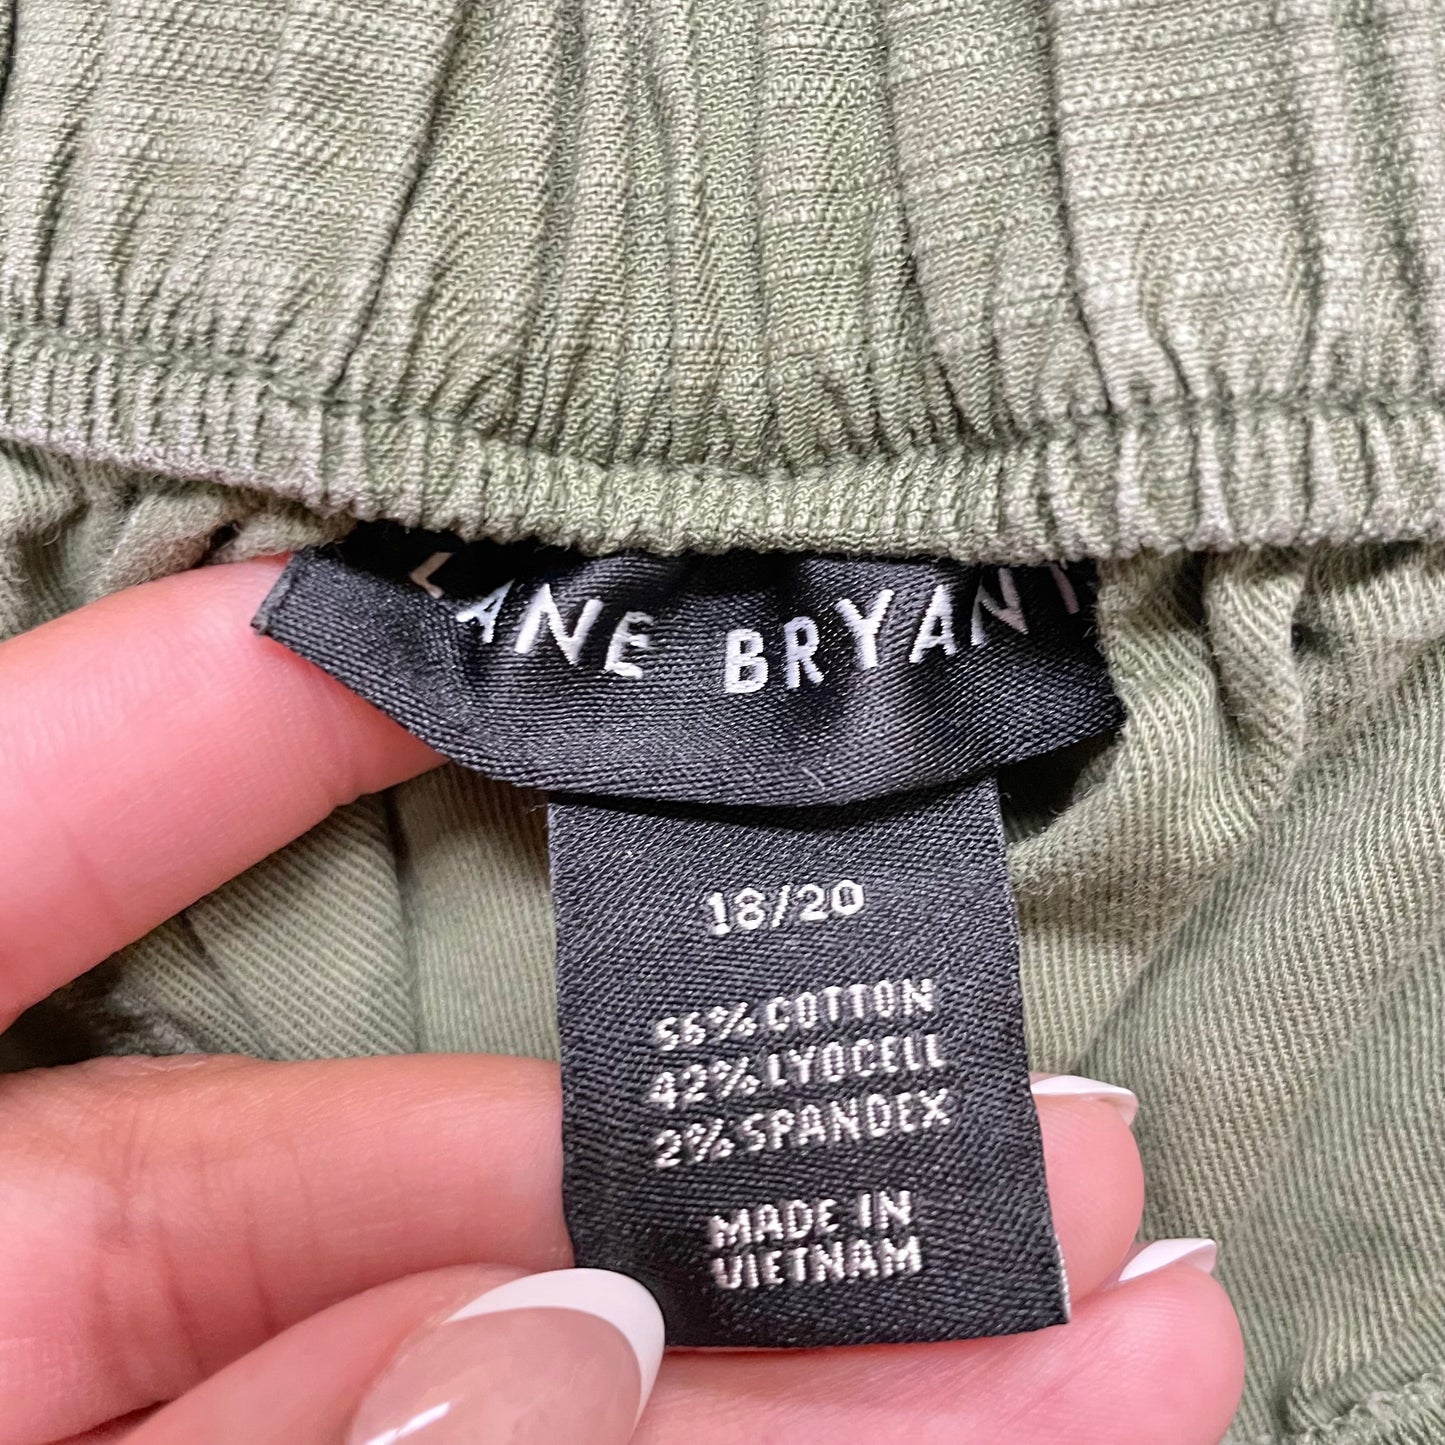 Green Shorts By Lane Bryant, Size: 2x